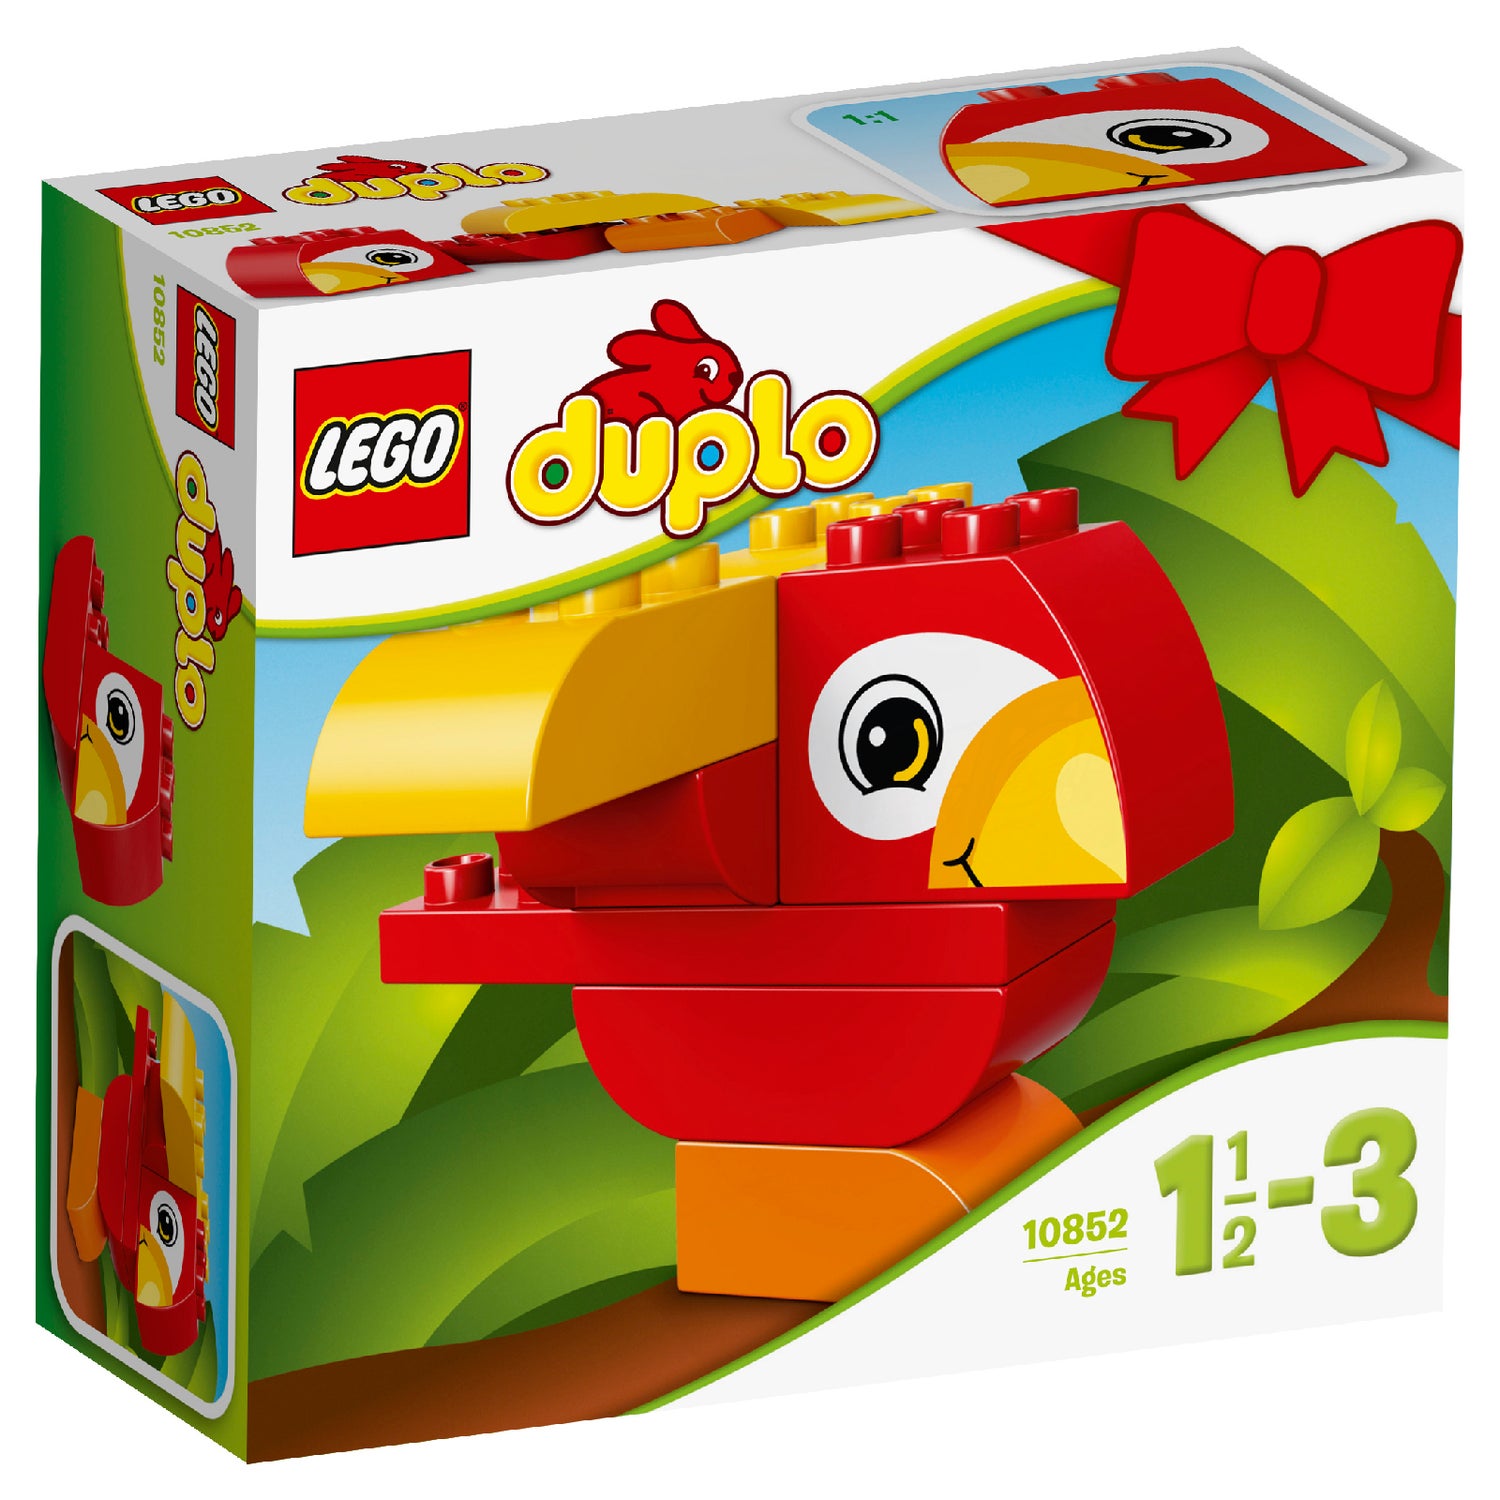 LEGO DUPLO: Mon premier oiseau (10852) Toys